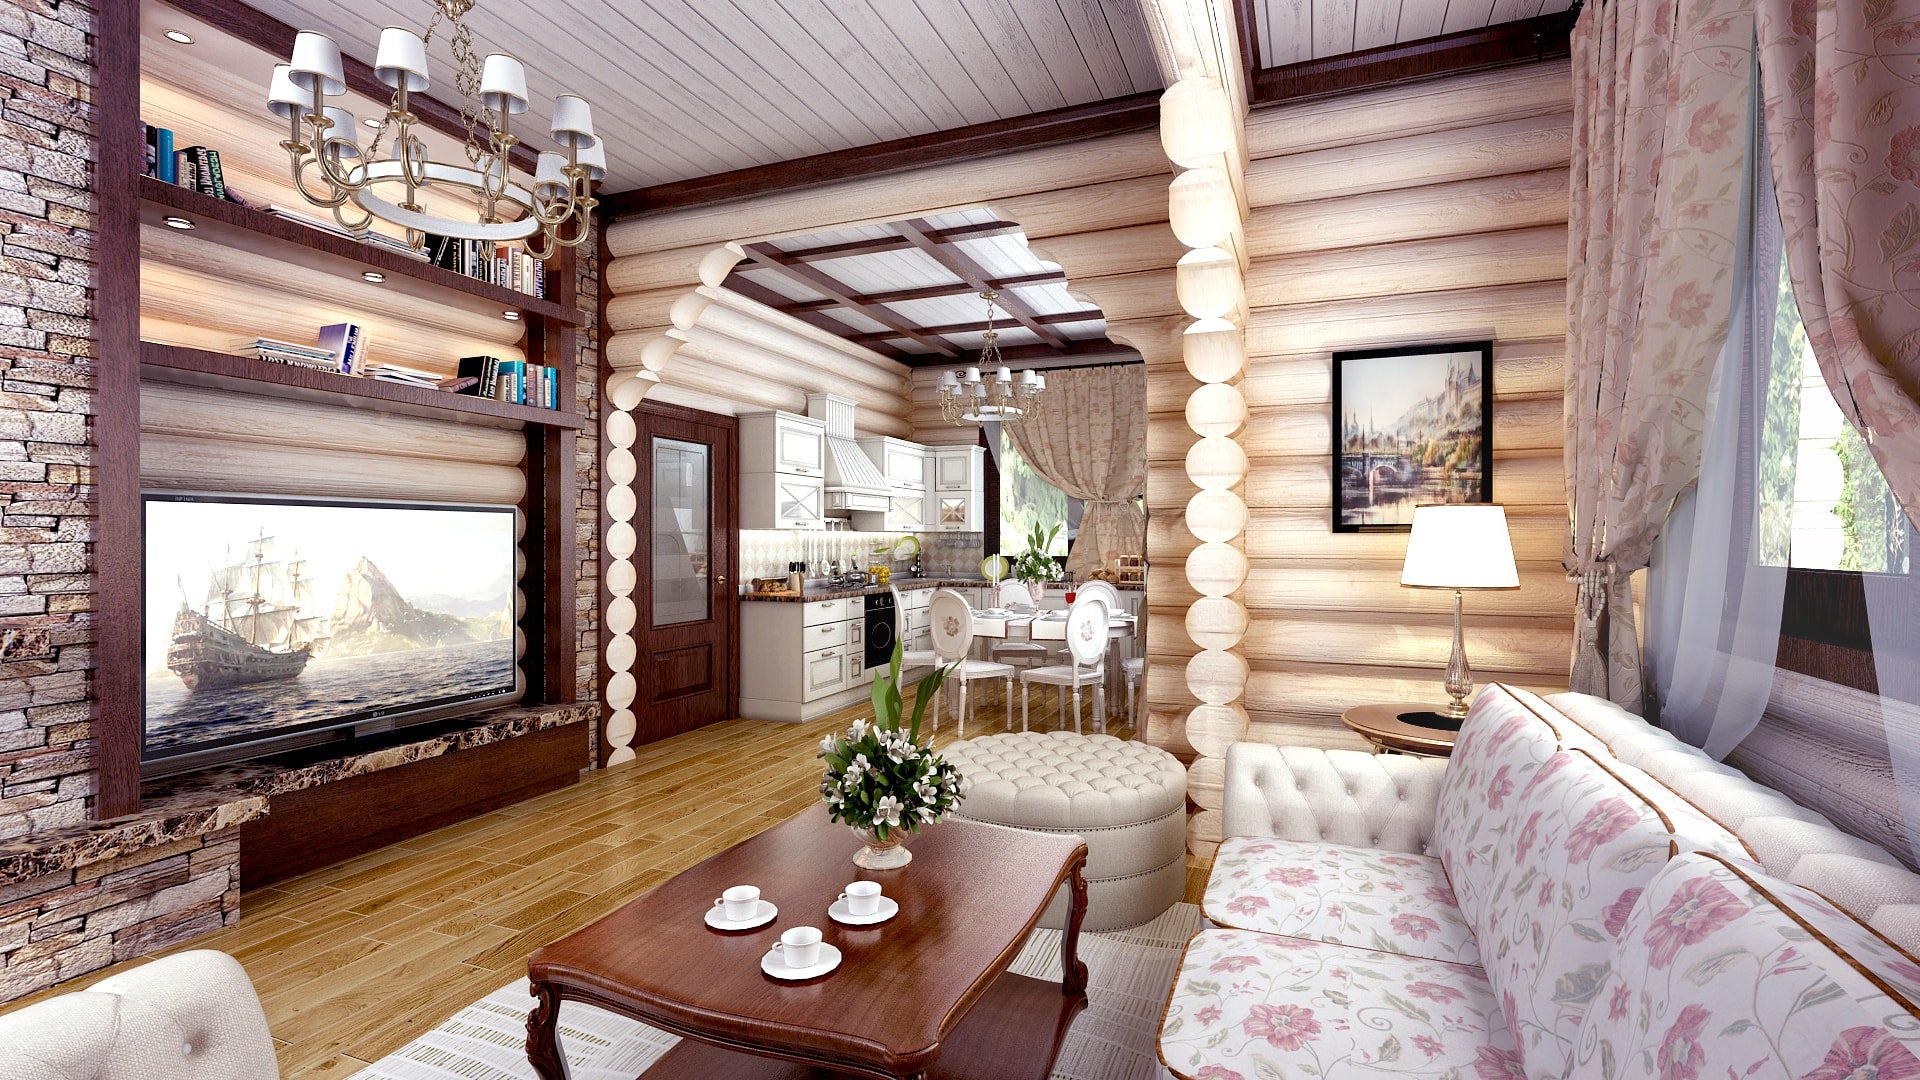 Ремонт в деревянном доме фото: Дизайн интерьера деревянного дома. 46 фото внутри